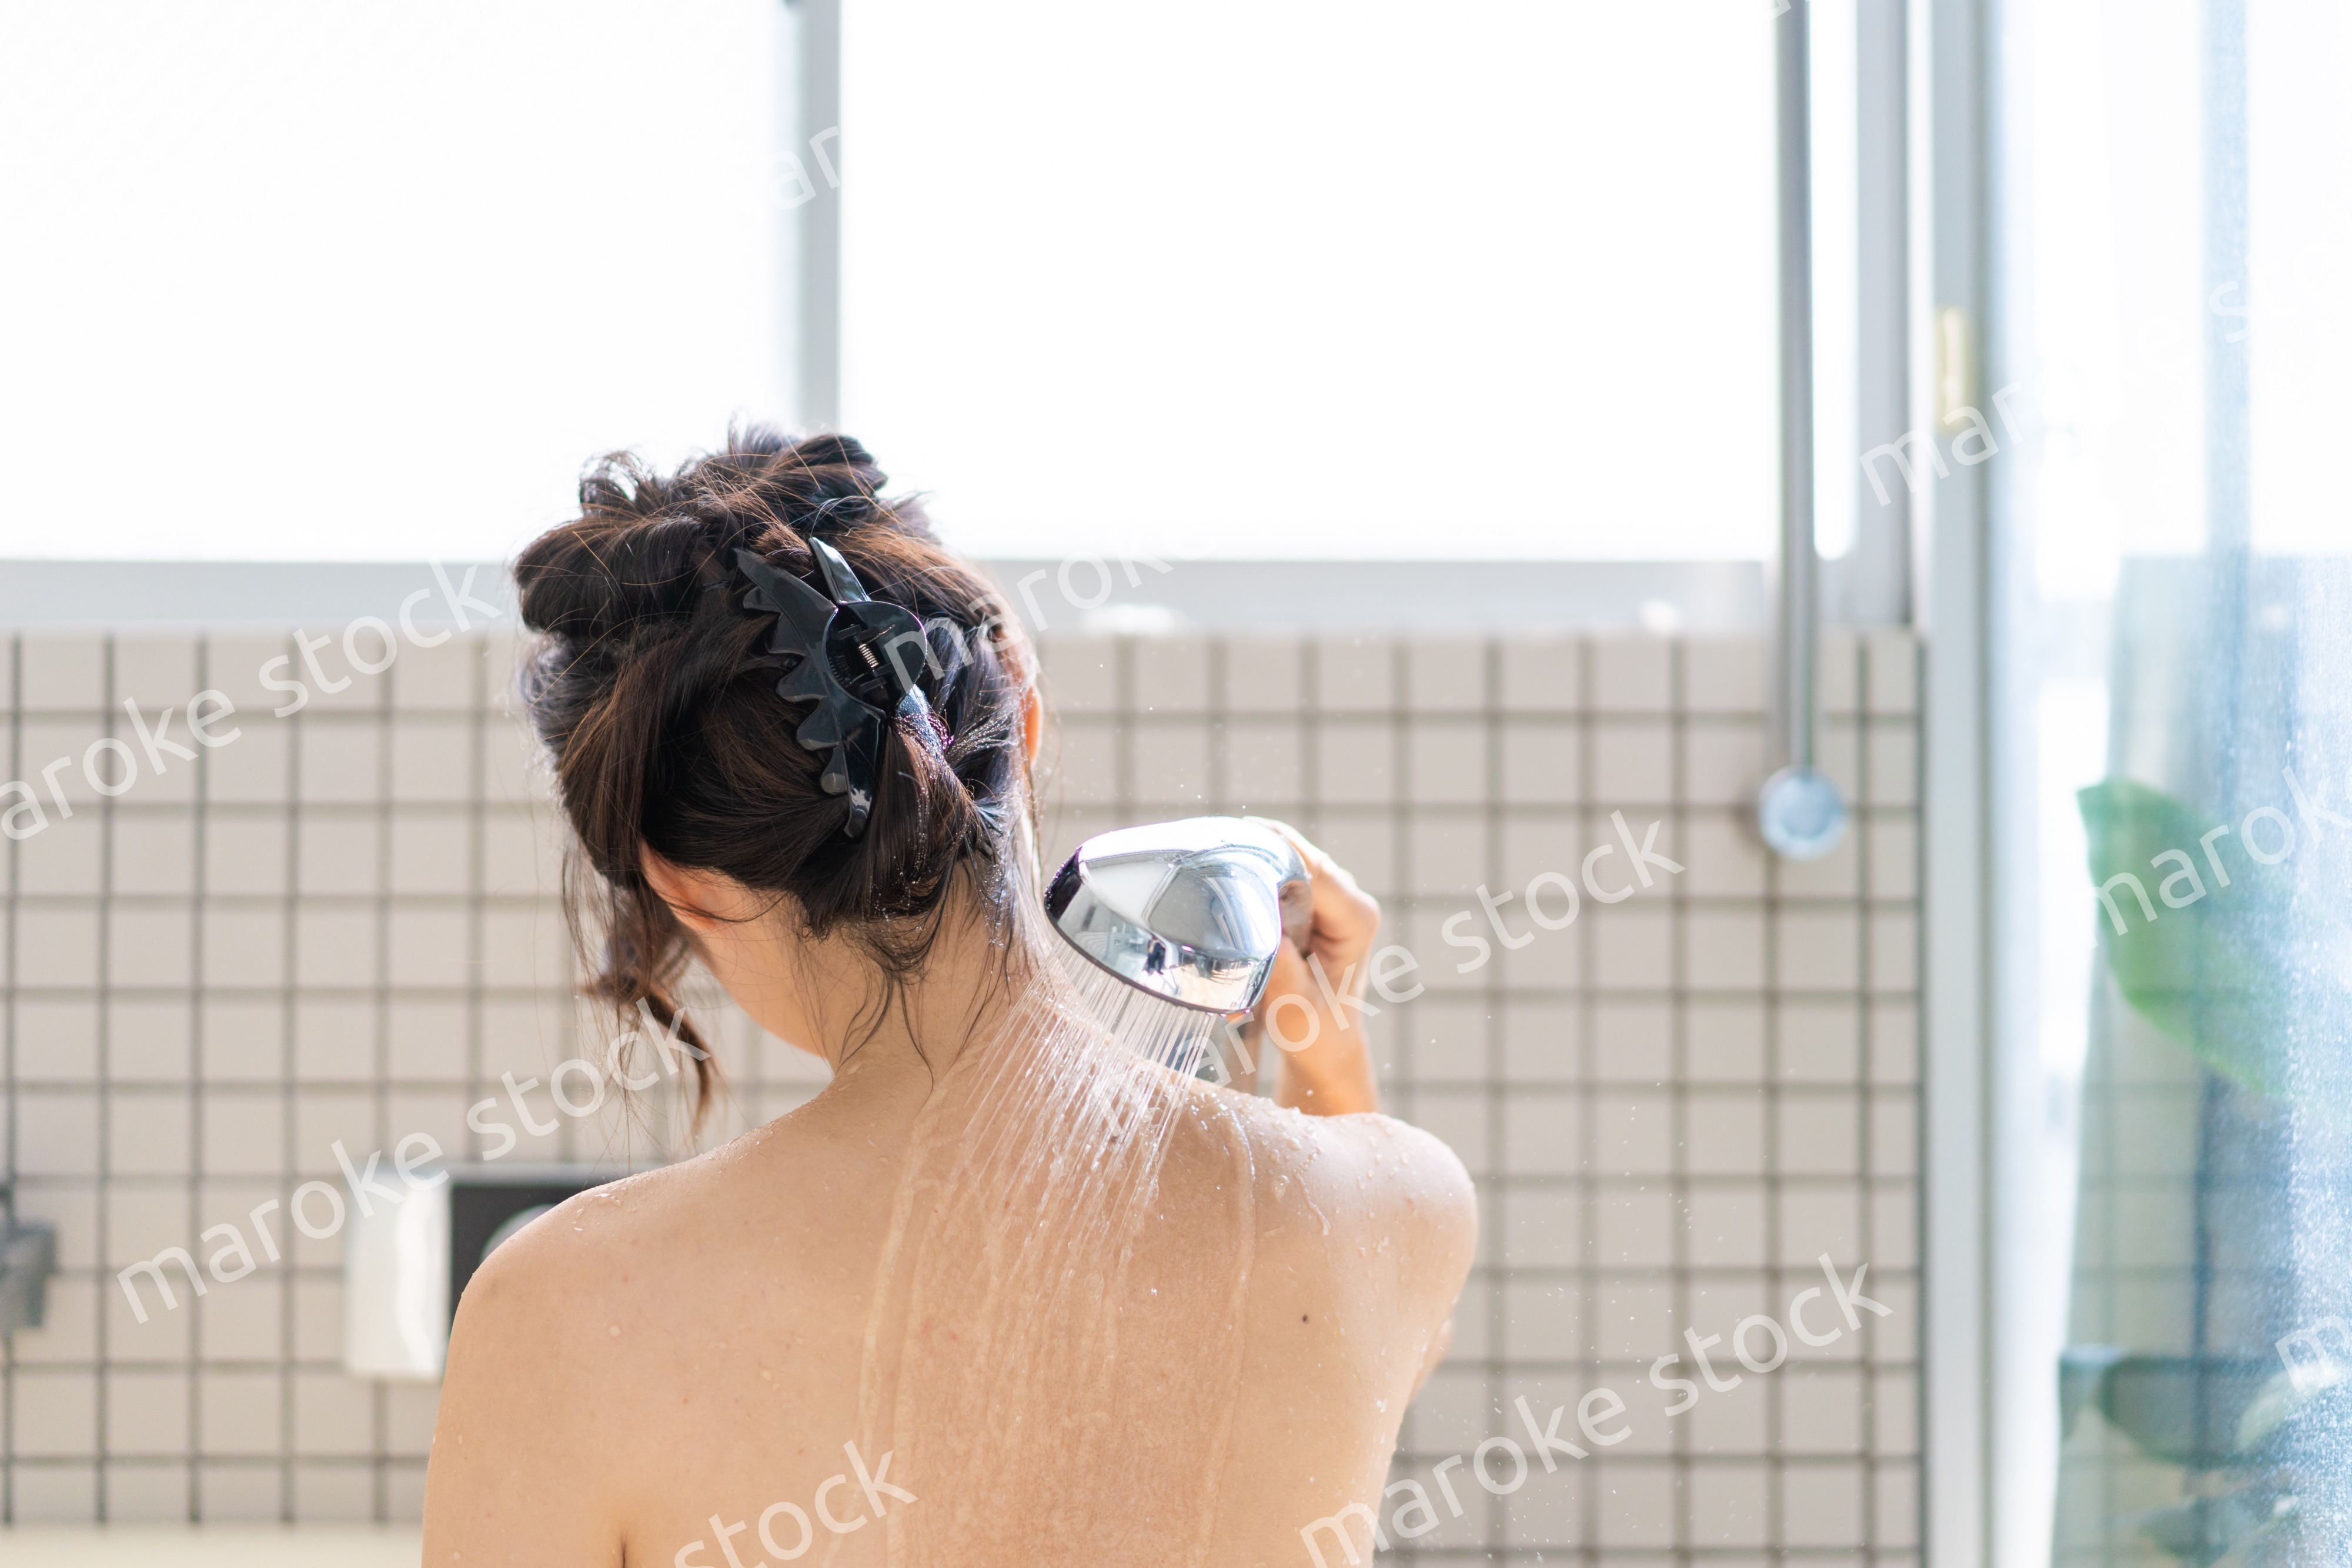 お風呂でシャワーを浴びる若い女性 Maroke Stock 写真素材をフォトグラファーから直接購入できるストックフォトサイト